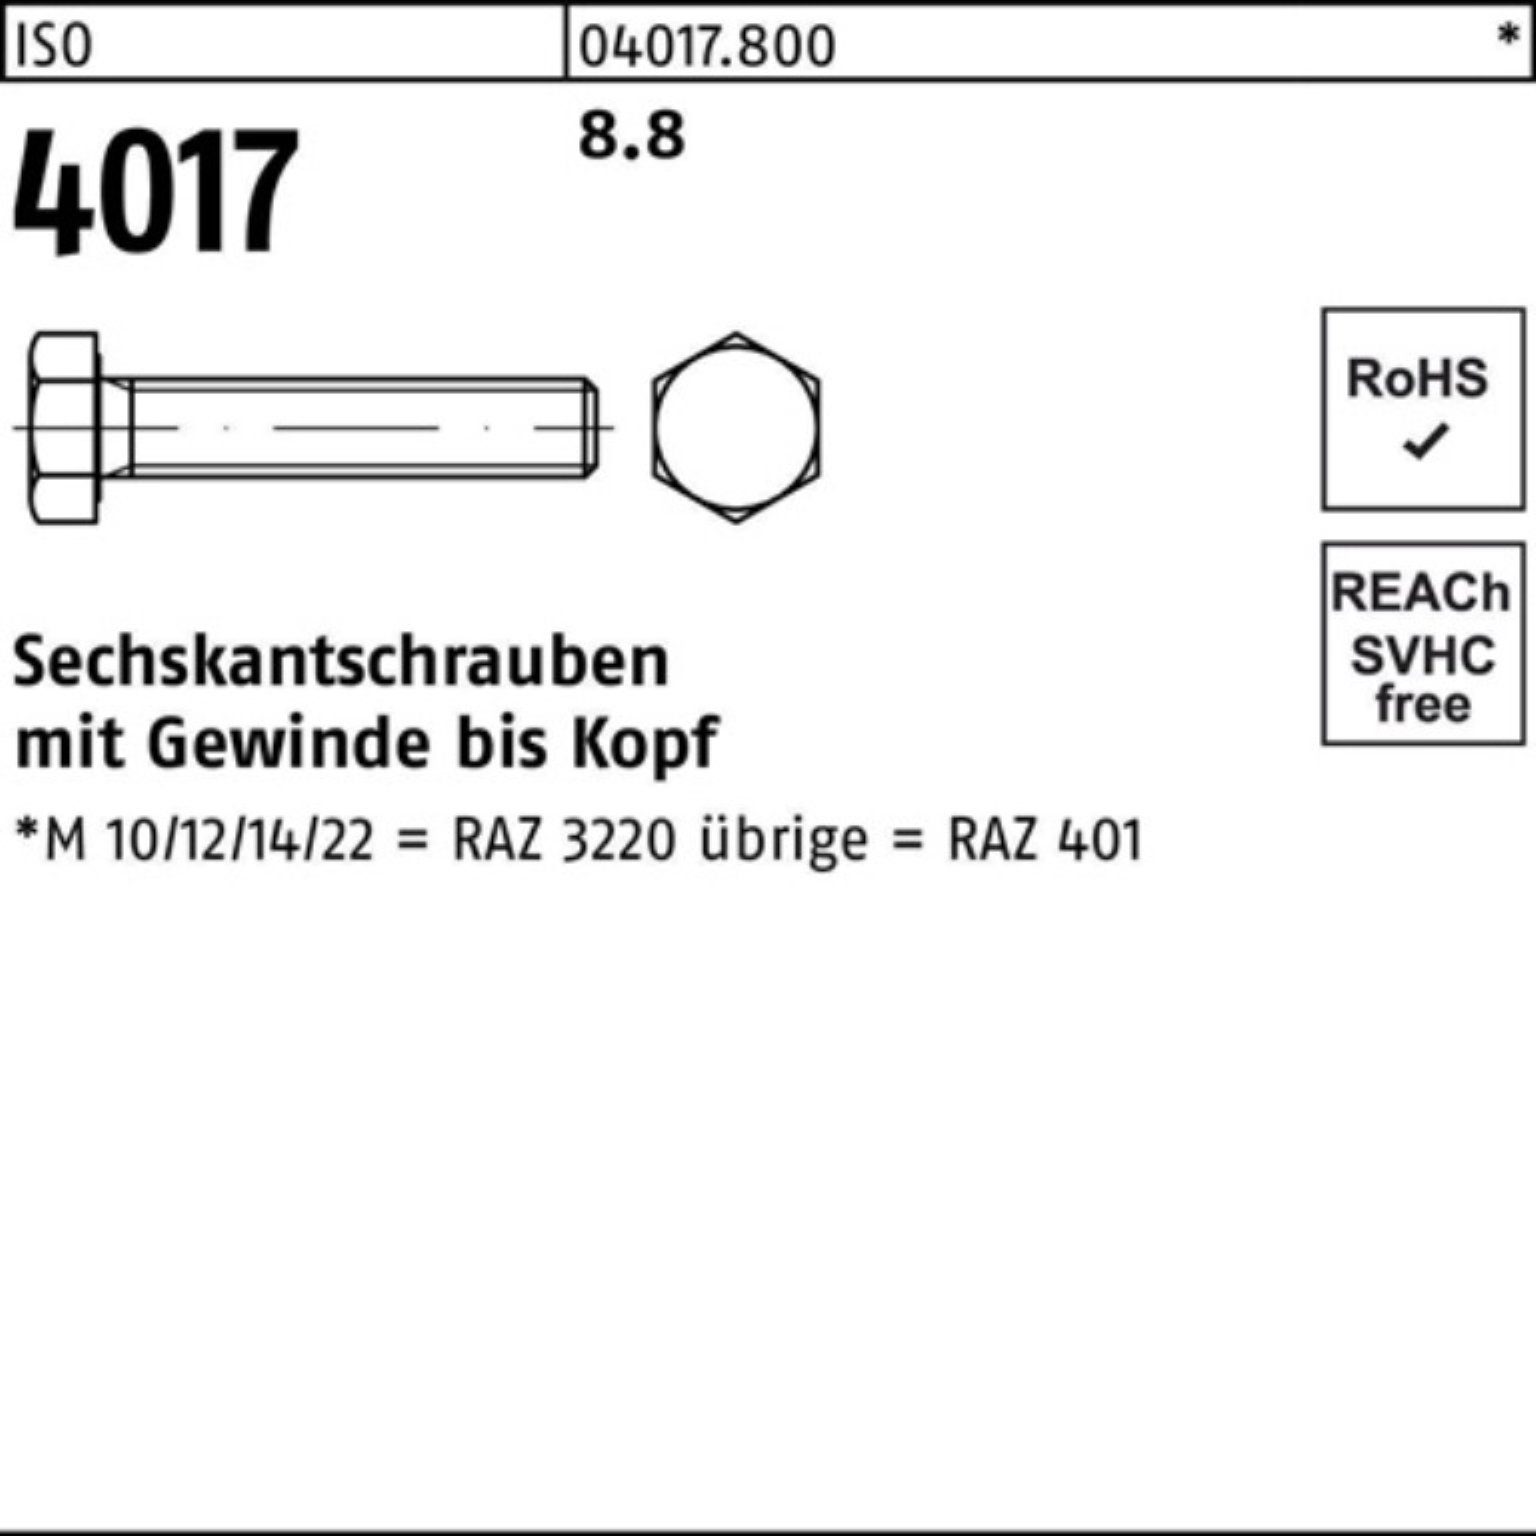 Bufab Sechskantschraube 100er Pack Sechskantschraube M27x 4017 10 401 ISO ISO VG 80 8.8 Stück